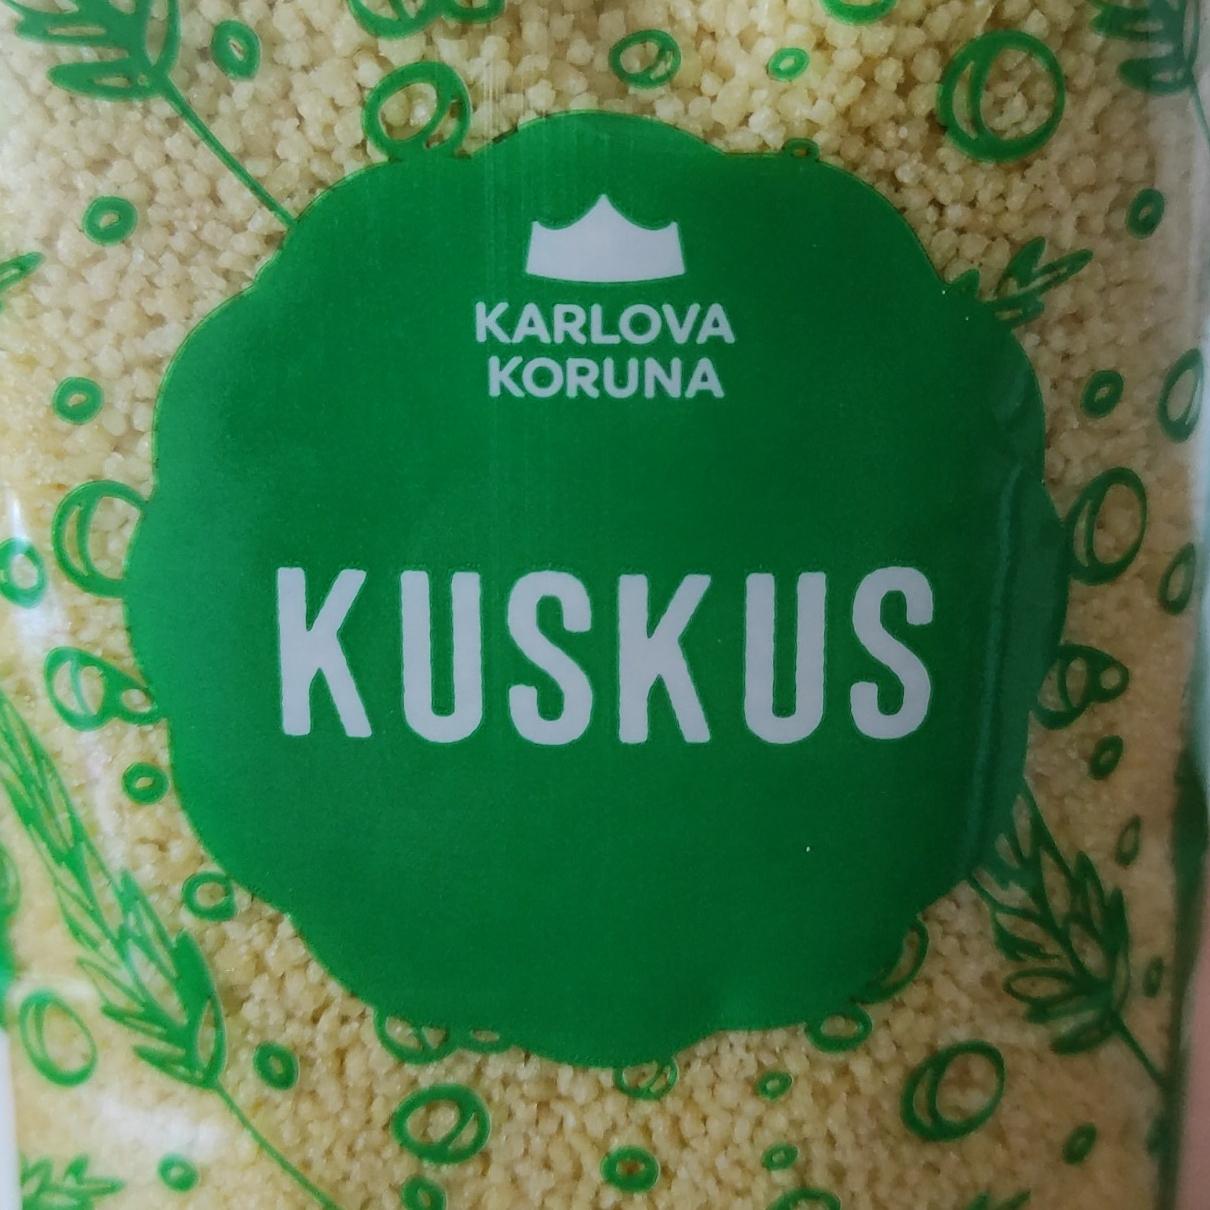 Фото - Крупа пшенична Kuskus Karlova Koruna